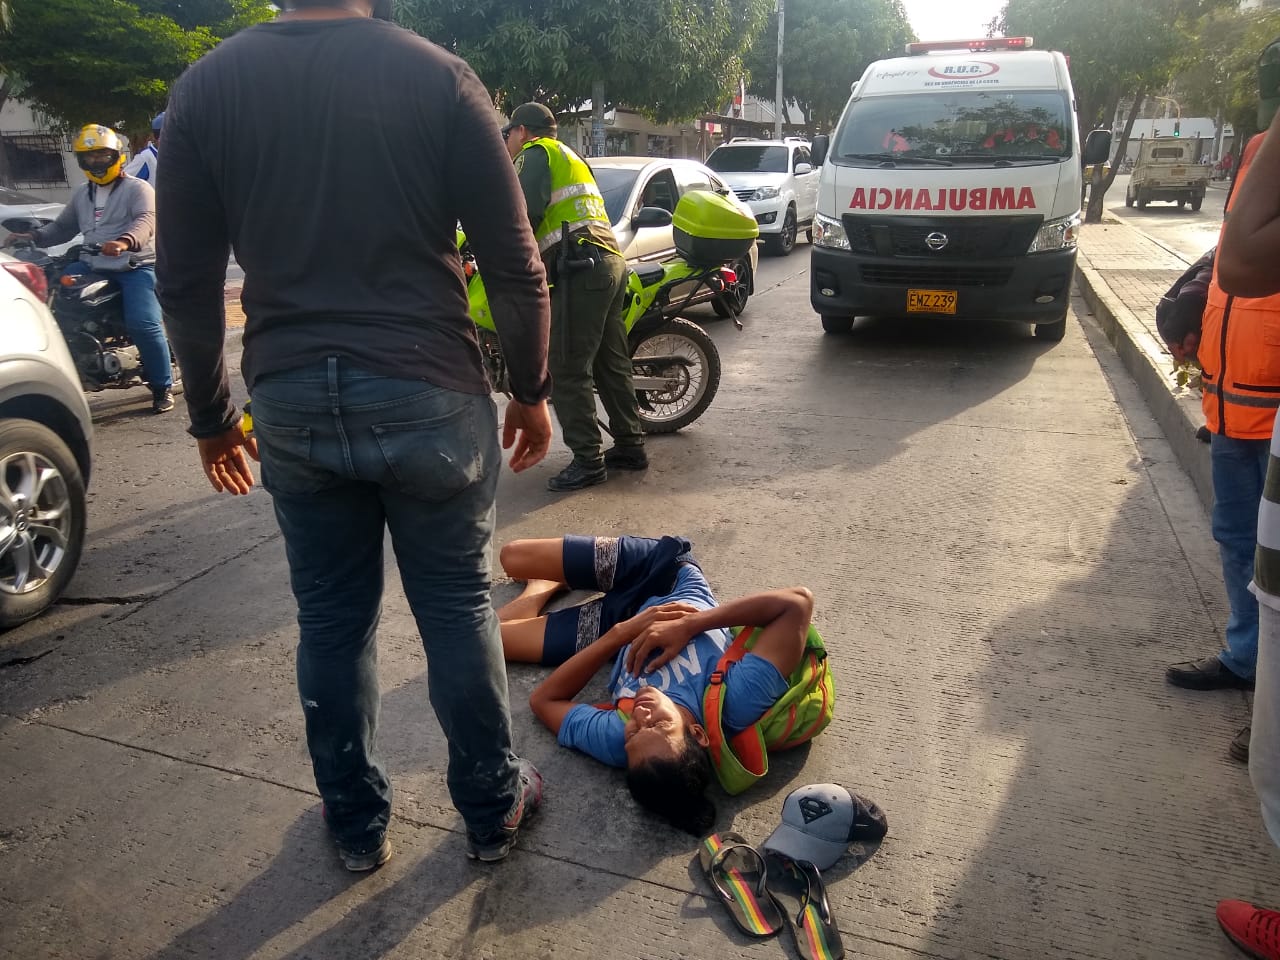 El ciclista quedó en el suelo lesionado hasta que llegó una ambulancia para trasladarlo a la clínica Bahía.